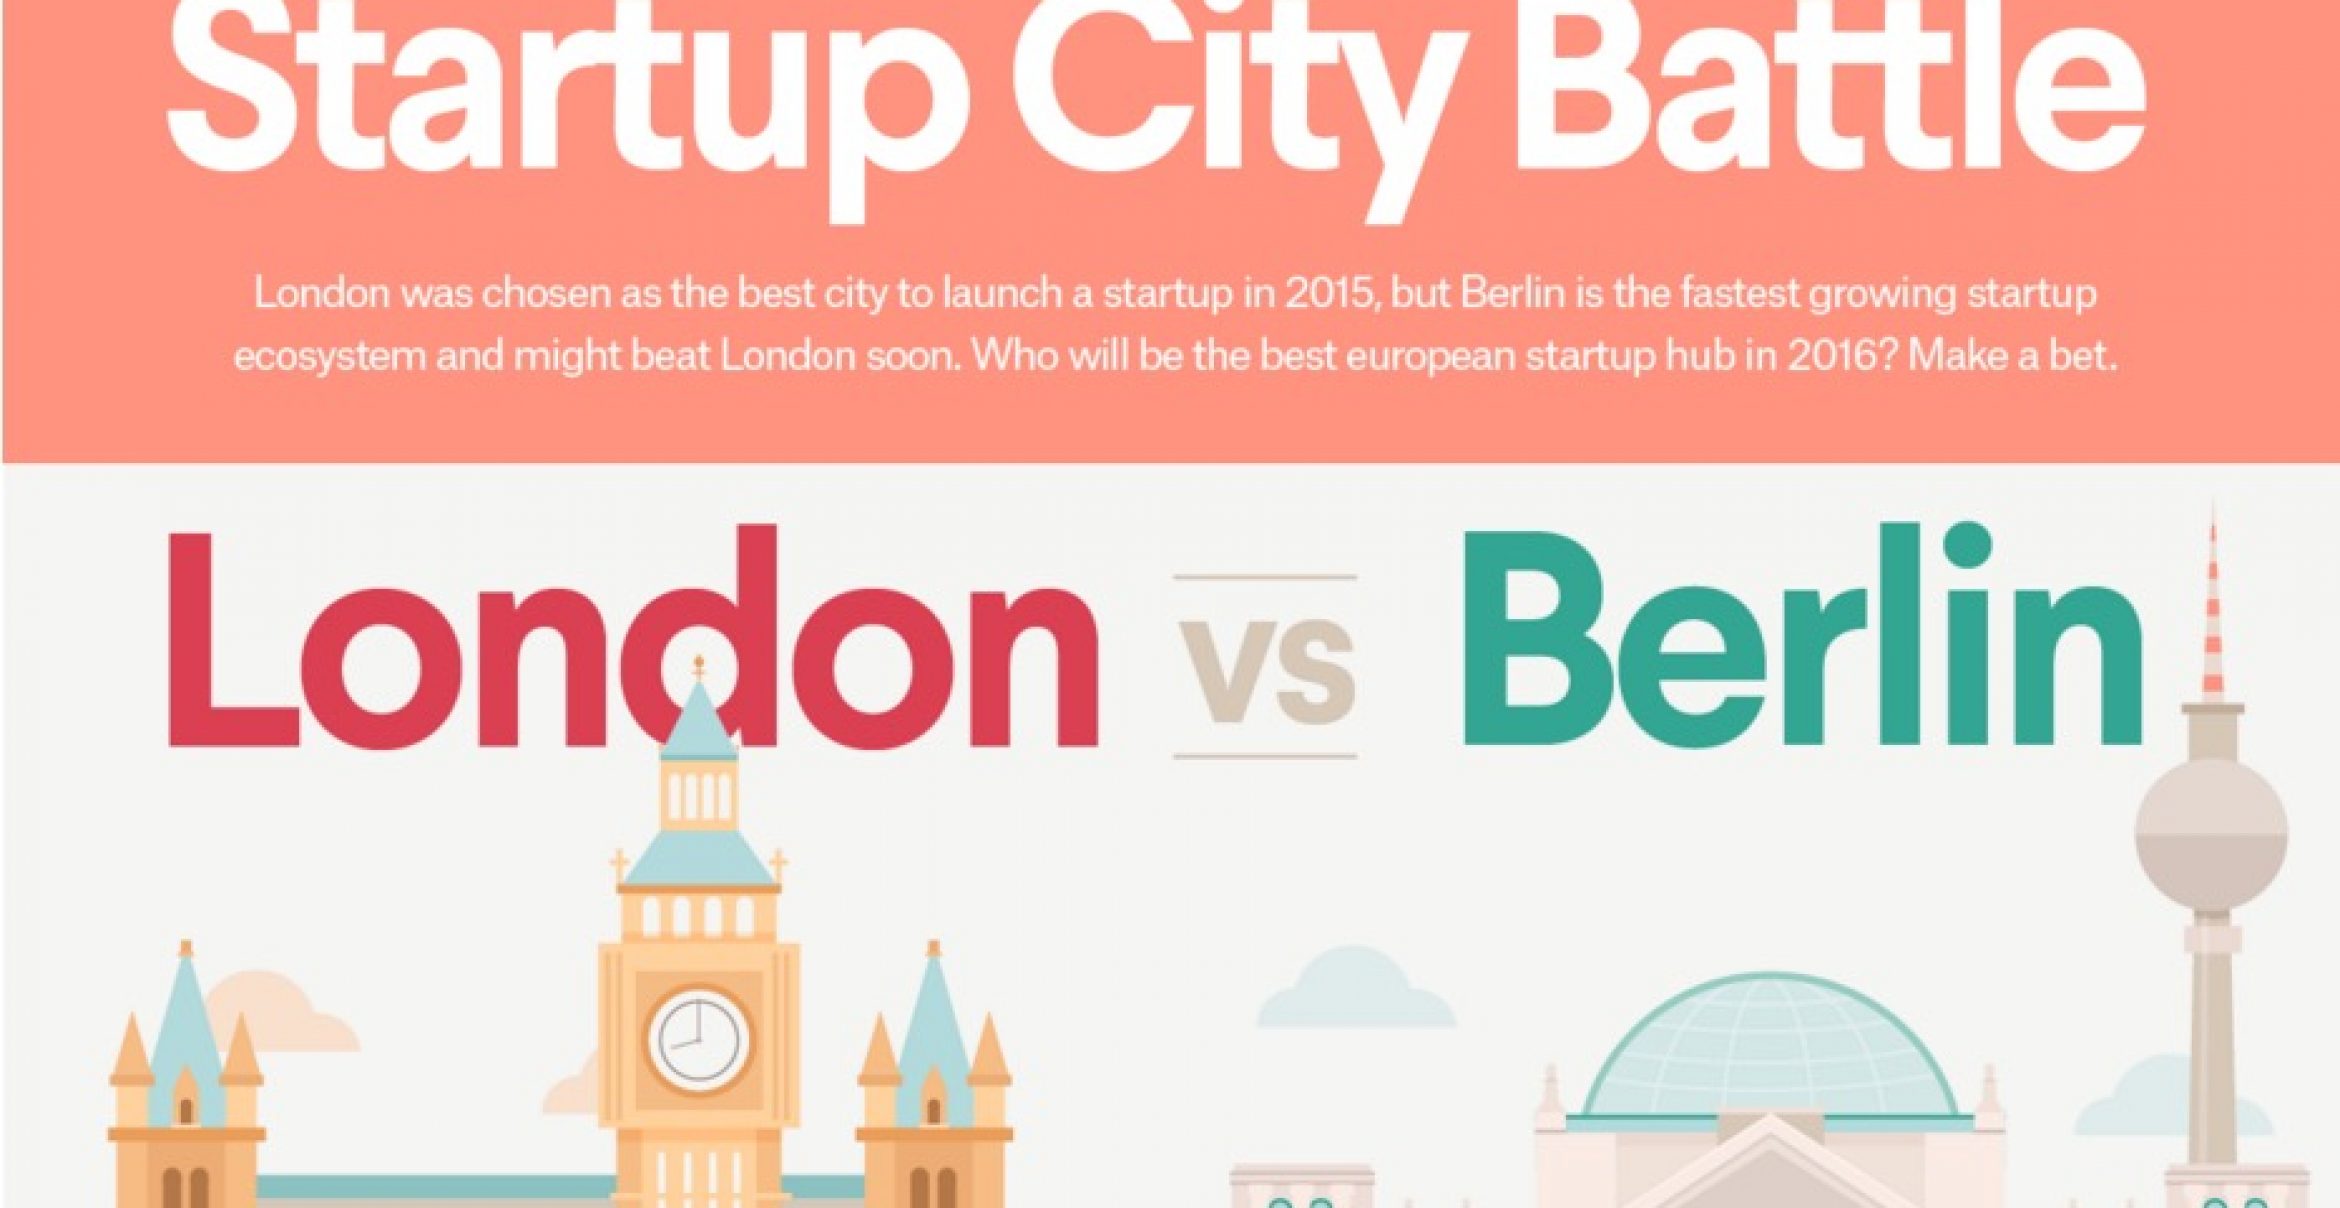 London vs. Berlin: Der ultimative Vergleich der beiden Startup-Metropolen